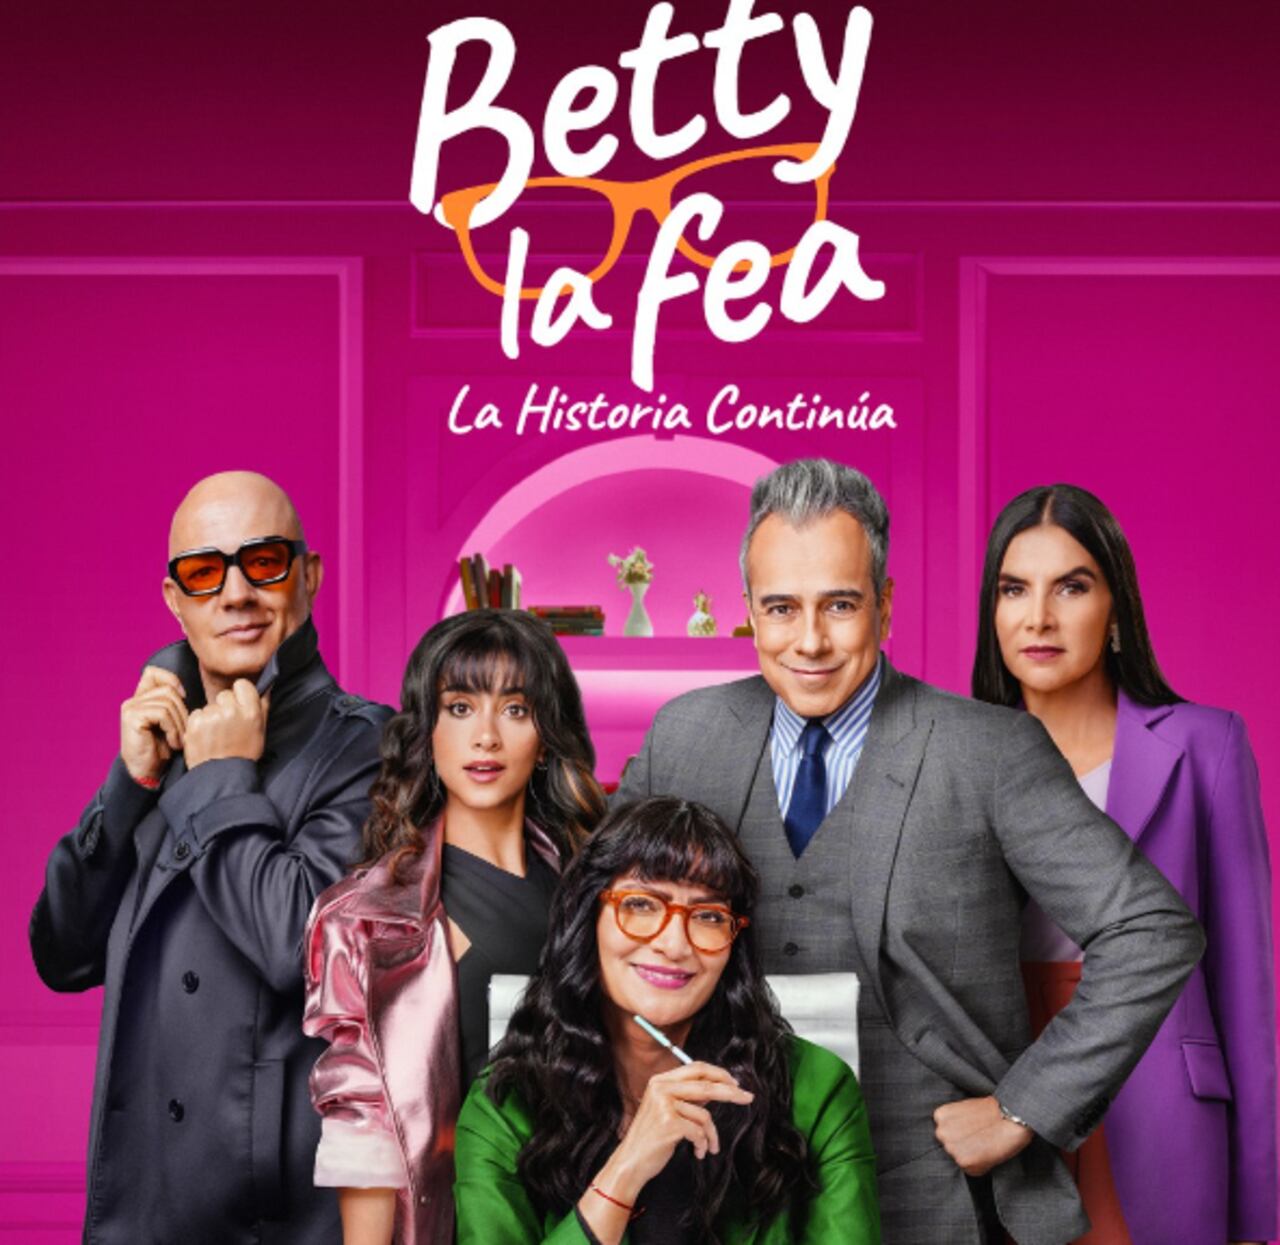 Comparten el tráiler oficial de Betty la fea 2, una producción que promete revivir los mejores momentos de Betty y Armando.